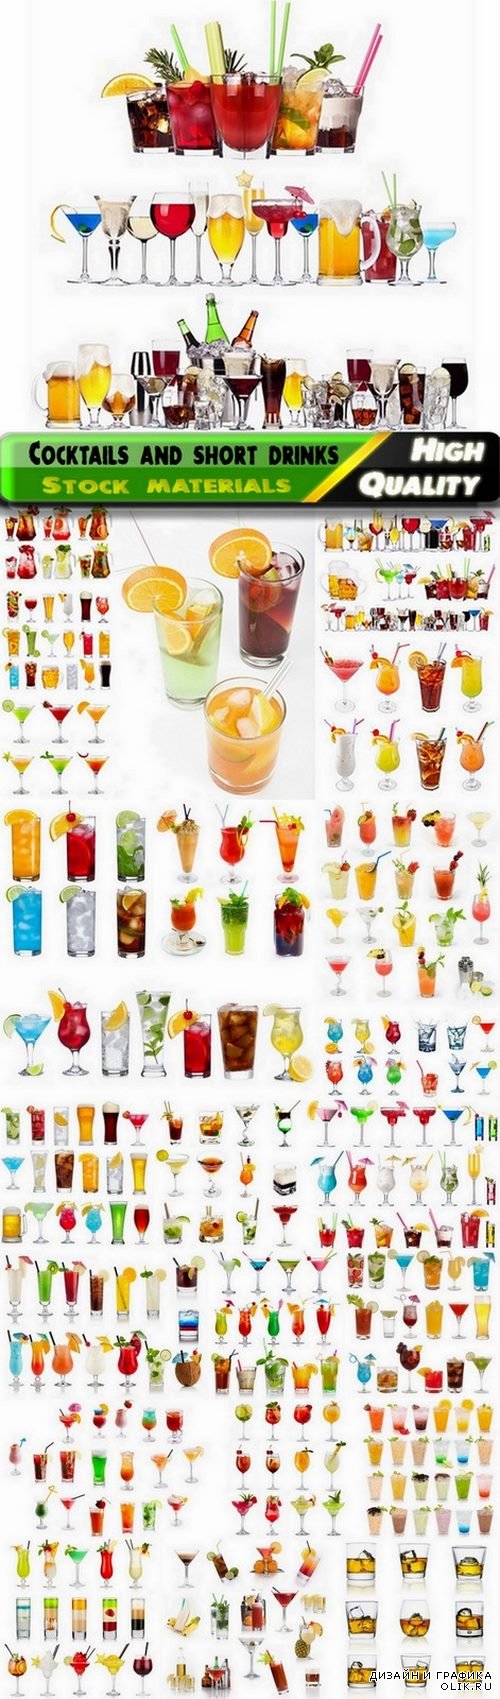 Big set of cocktails and short drinks - 25 HQ Jpg